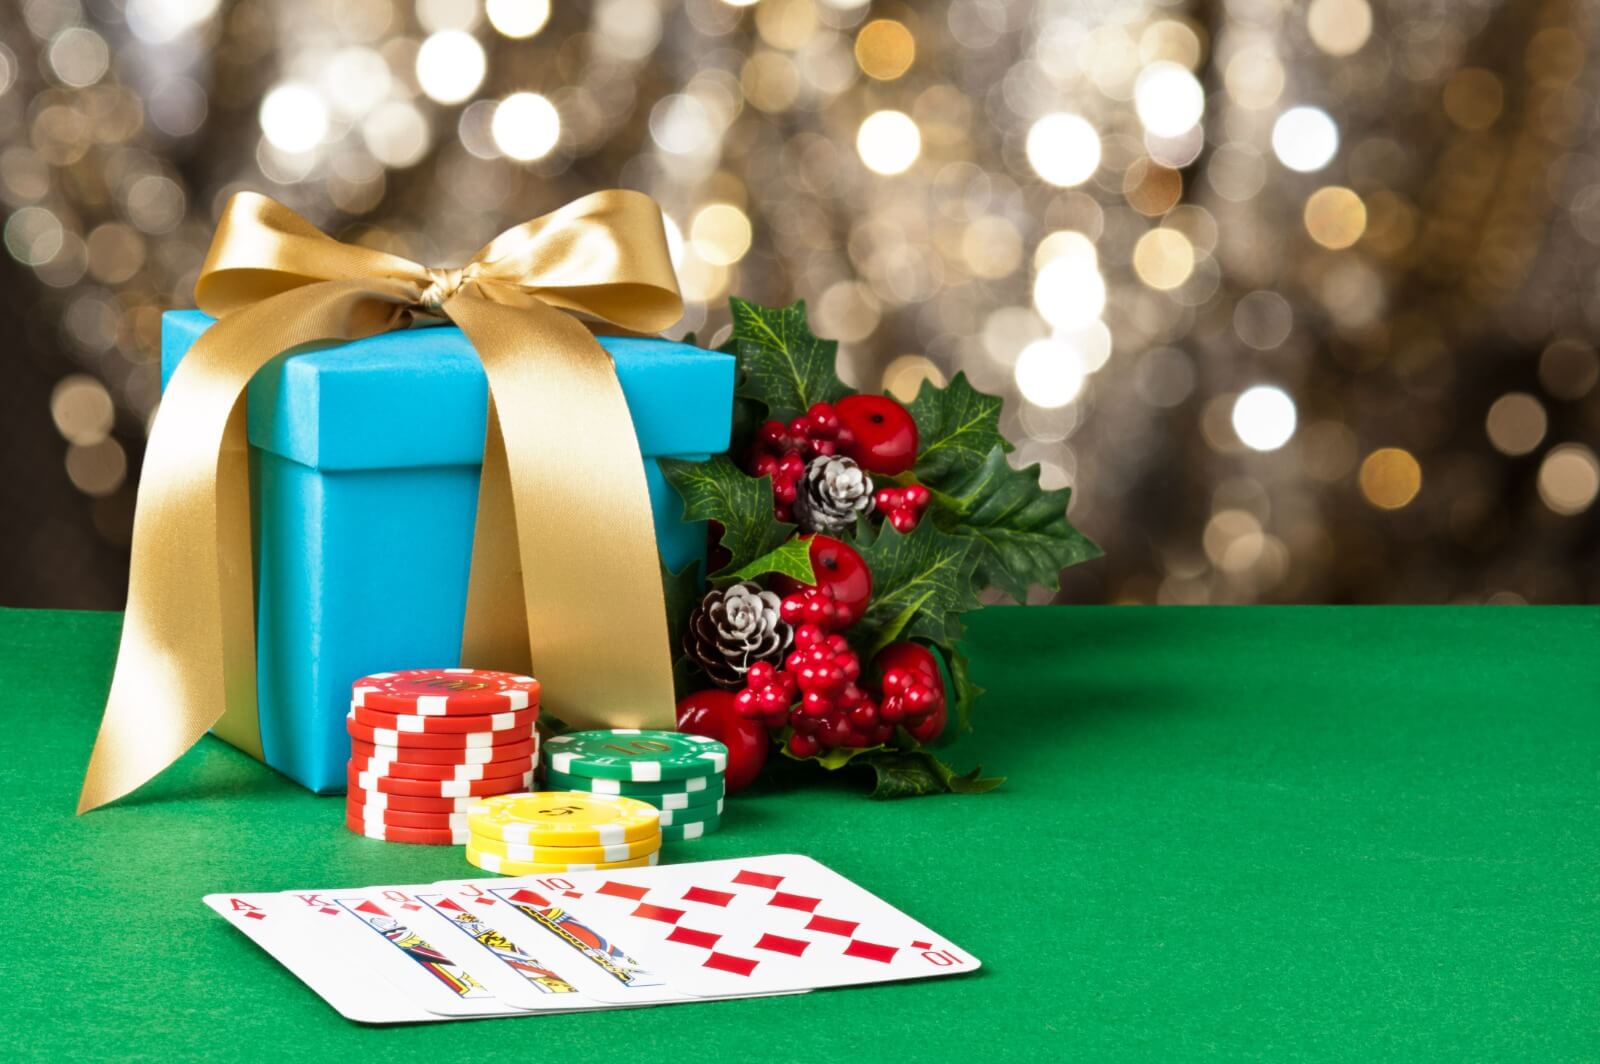 Buku poker untuk diberikan untuk Natal